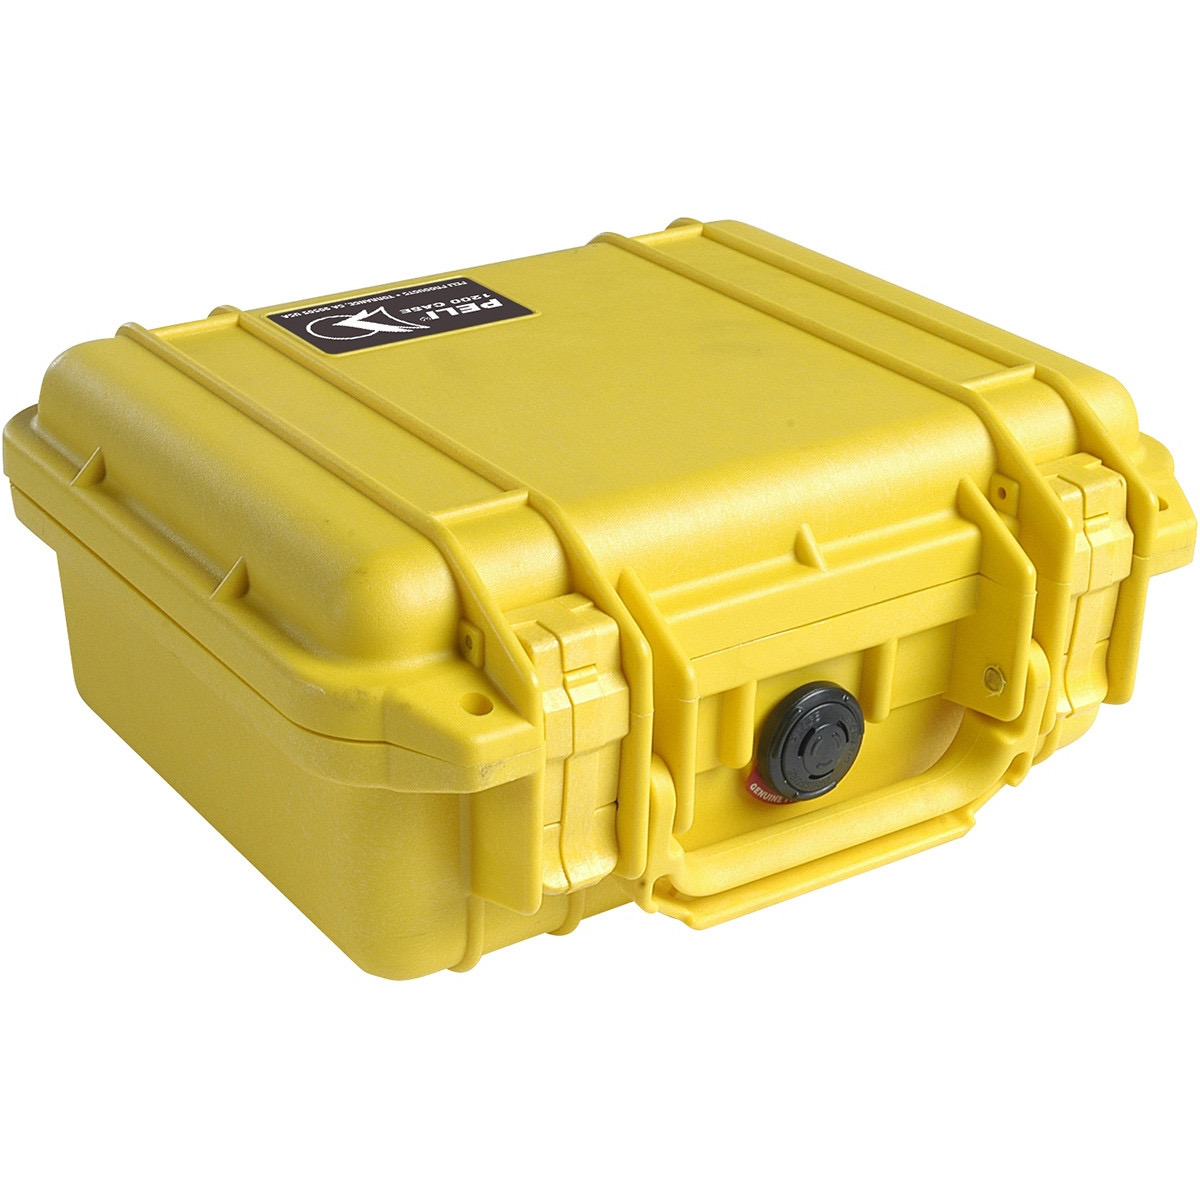 Peli Case 1200 mit Schaumstoff gelb